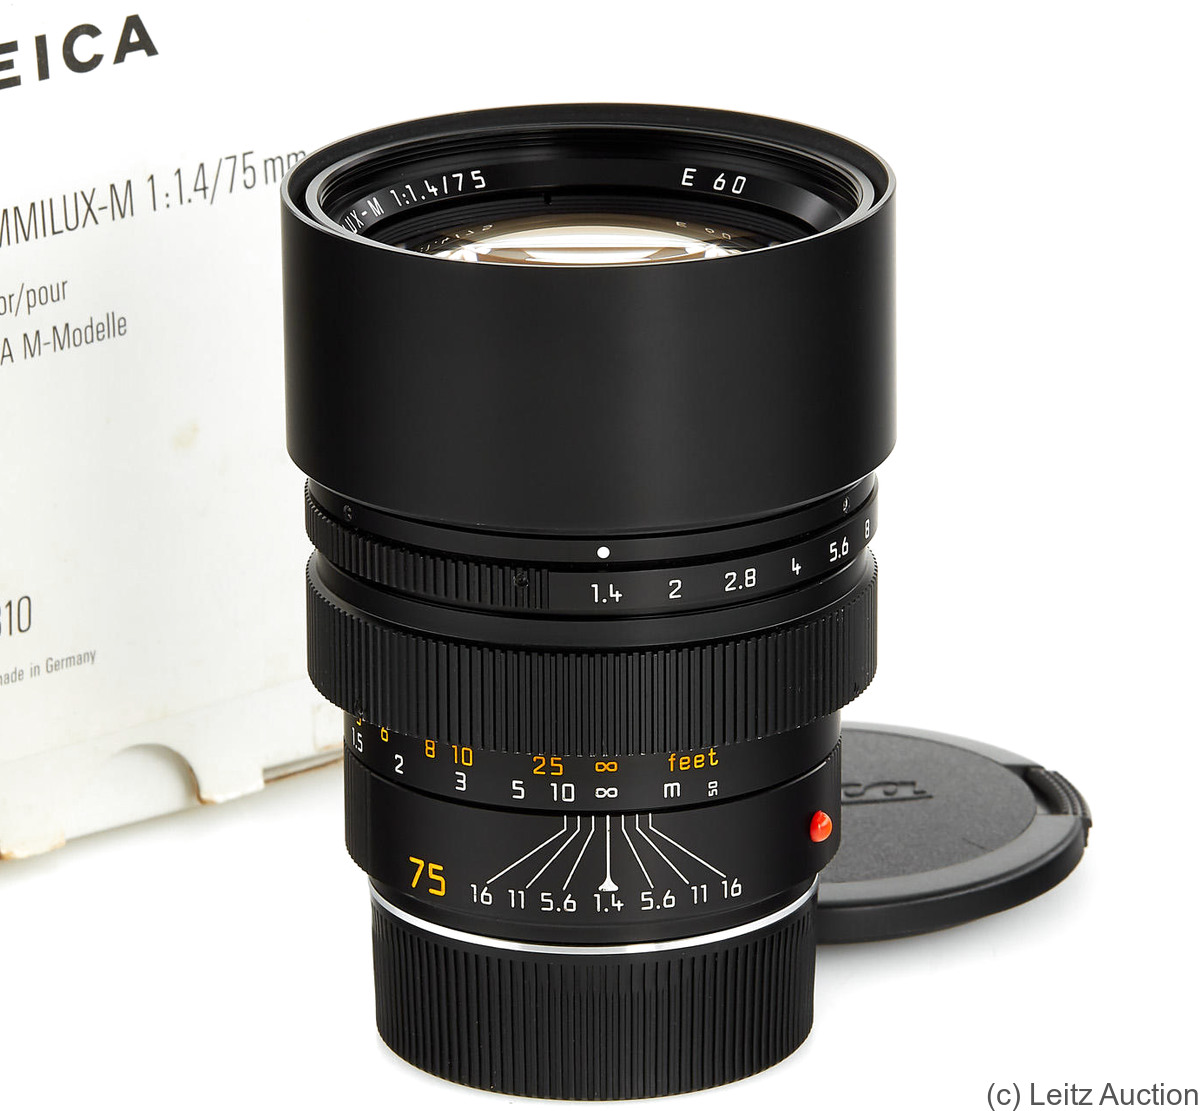 Leitz: 75mm (7.5cm) f1.4 Summilux-M (BM, black, 11810) camera